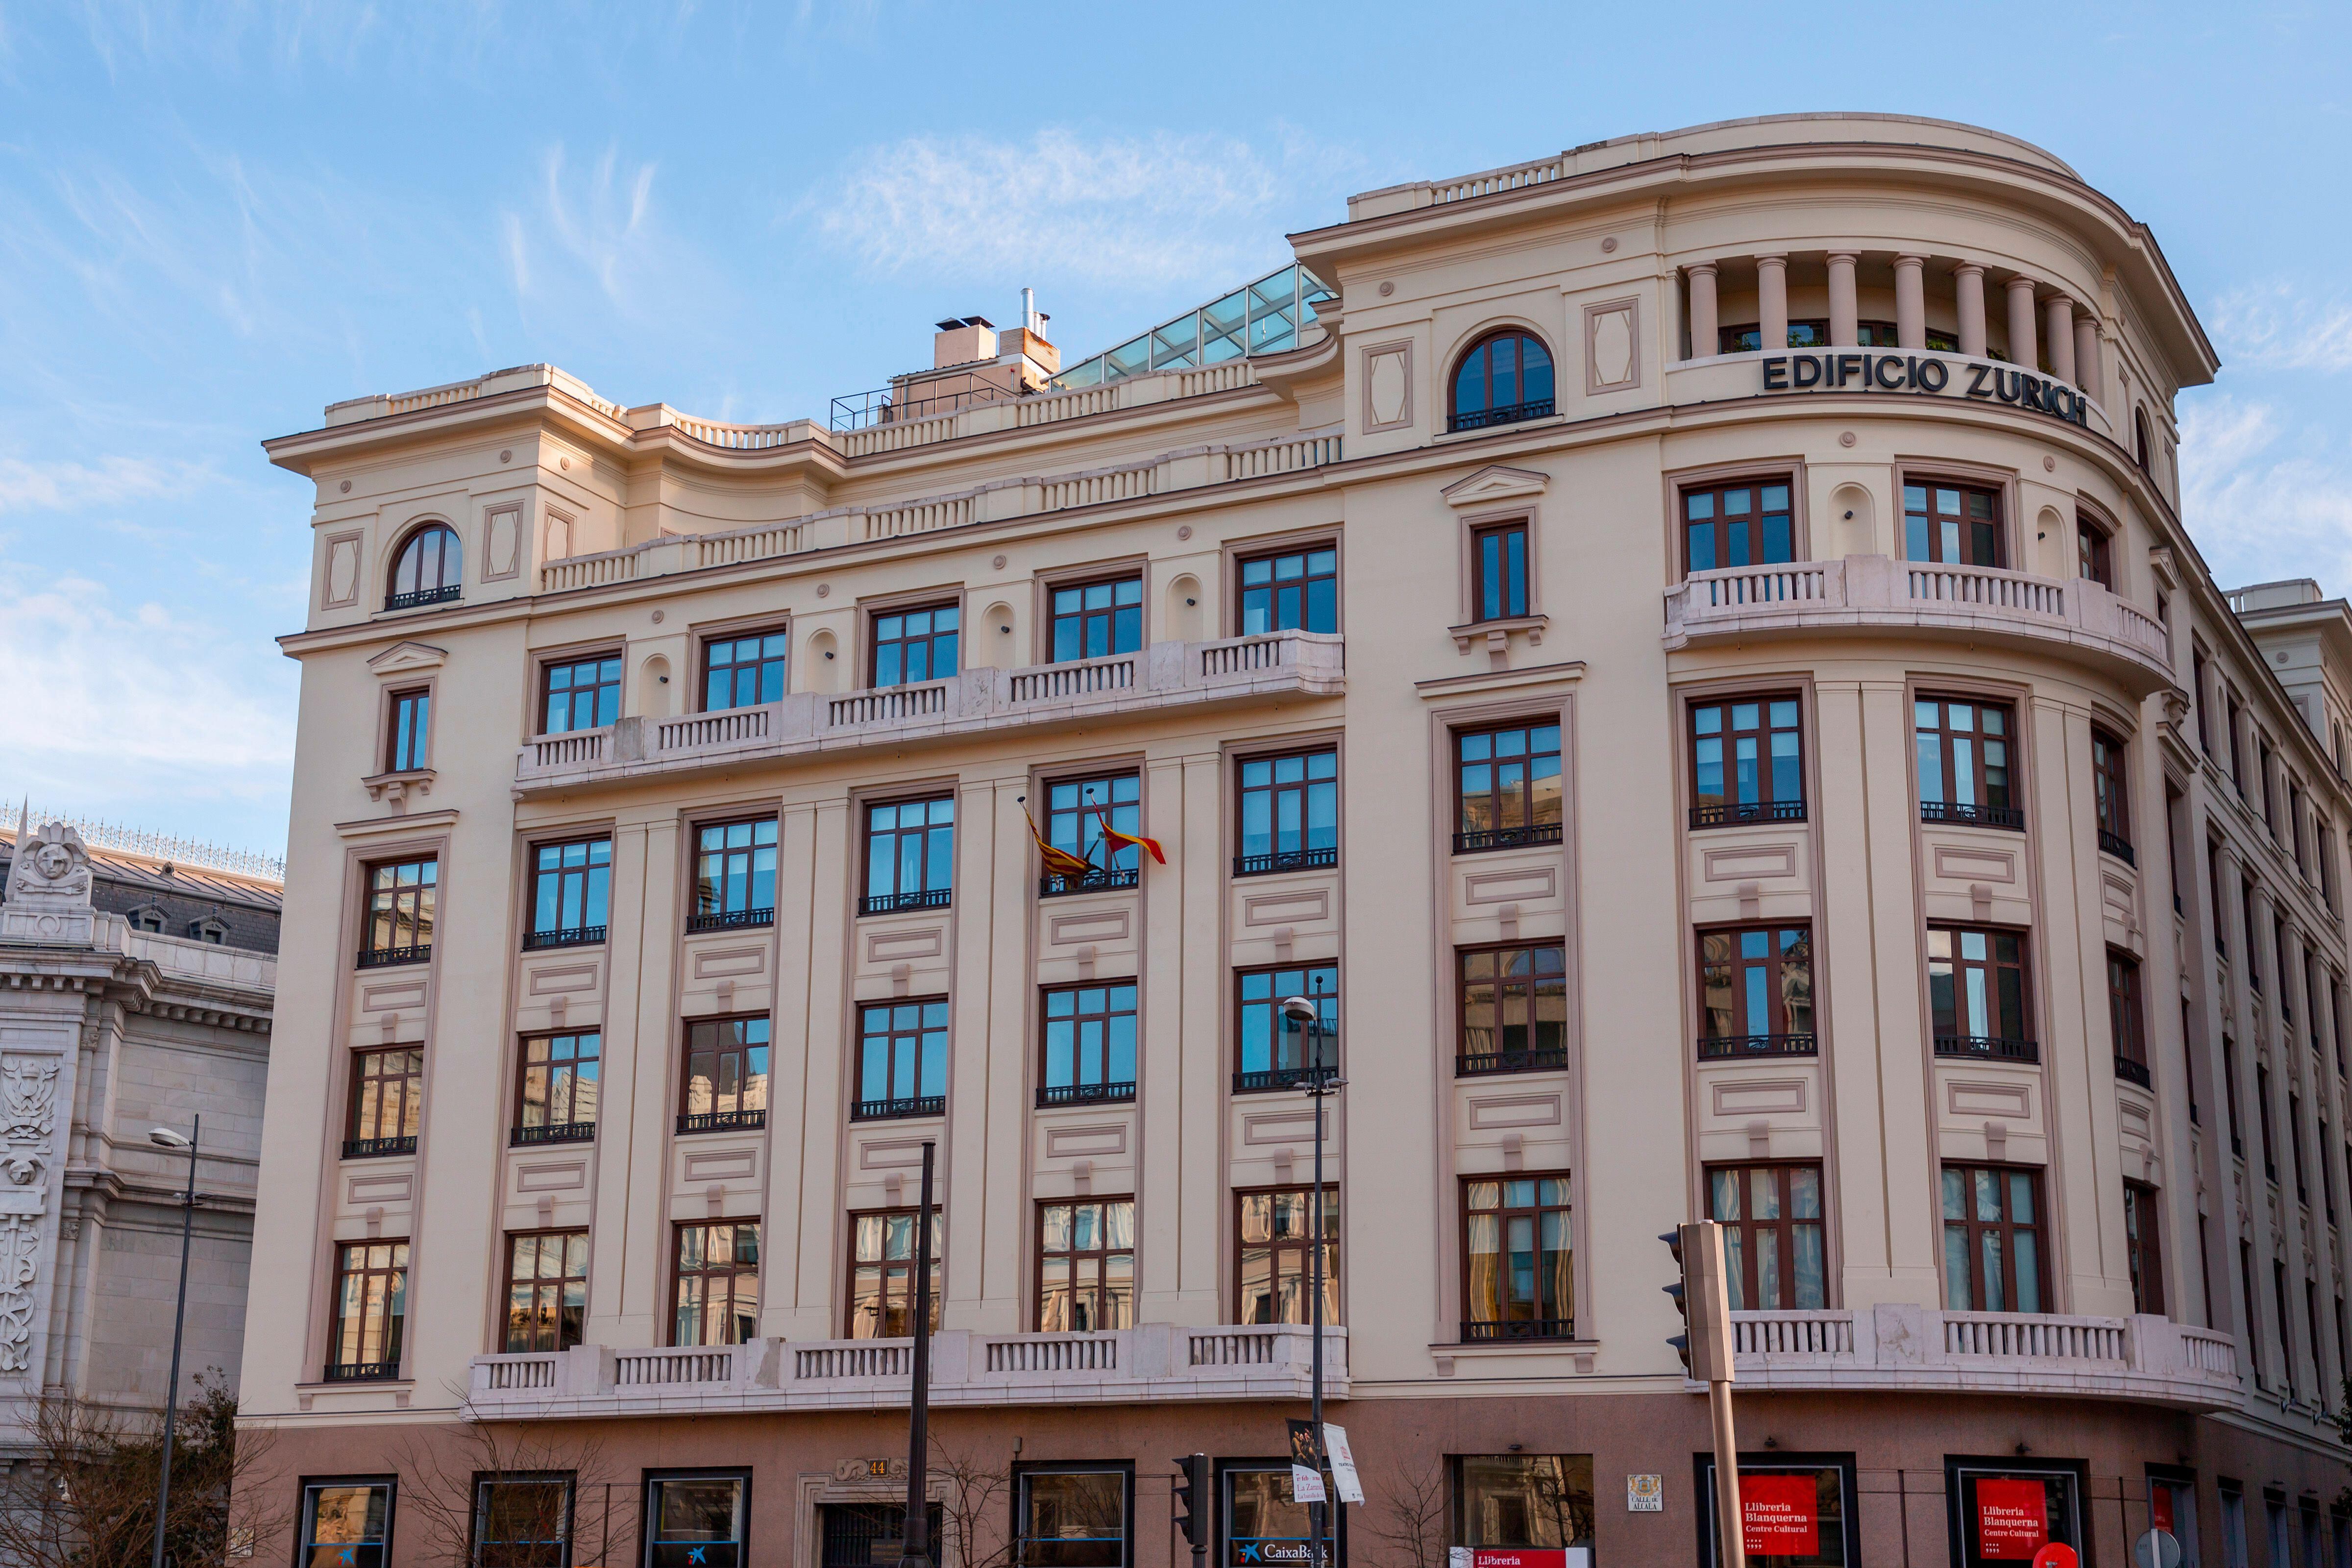 Edificio vendido por Zurich en el número 44 de la calle de Alcalá de Madrid.